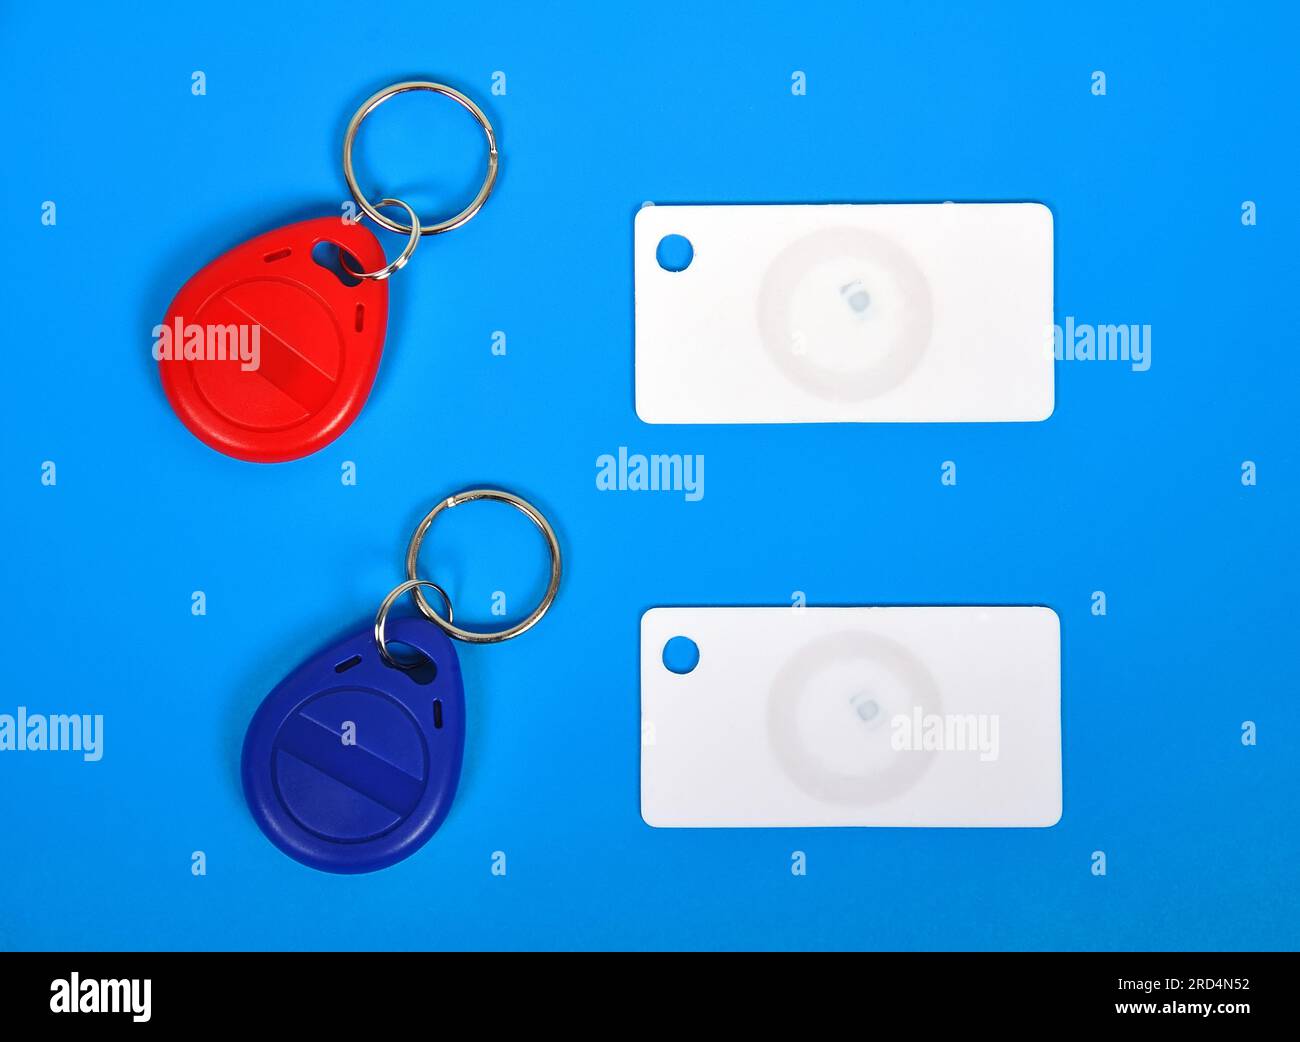 zwei RFID-Karten und Schlüsselanhänger auf blauem Hintergrund Stockfoto